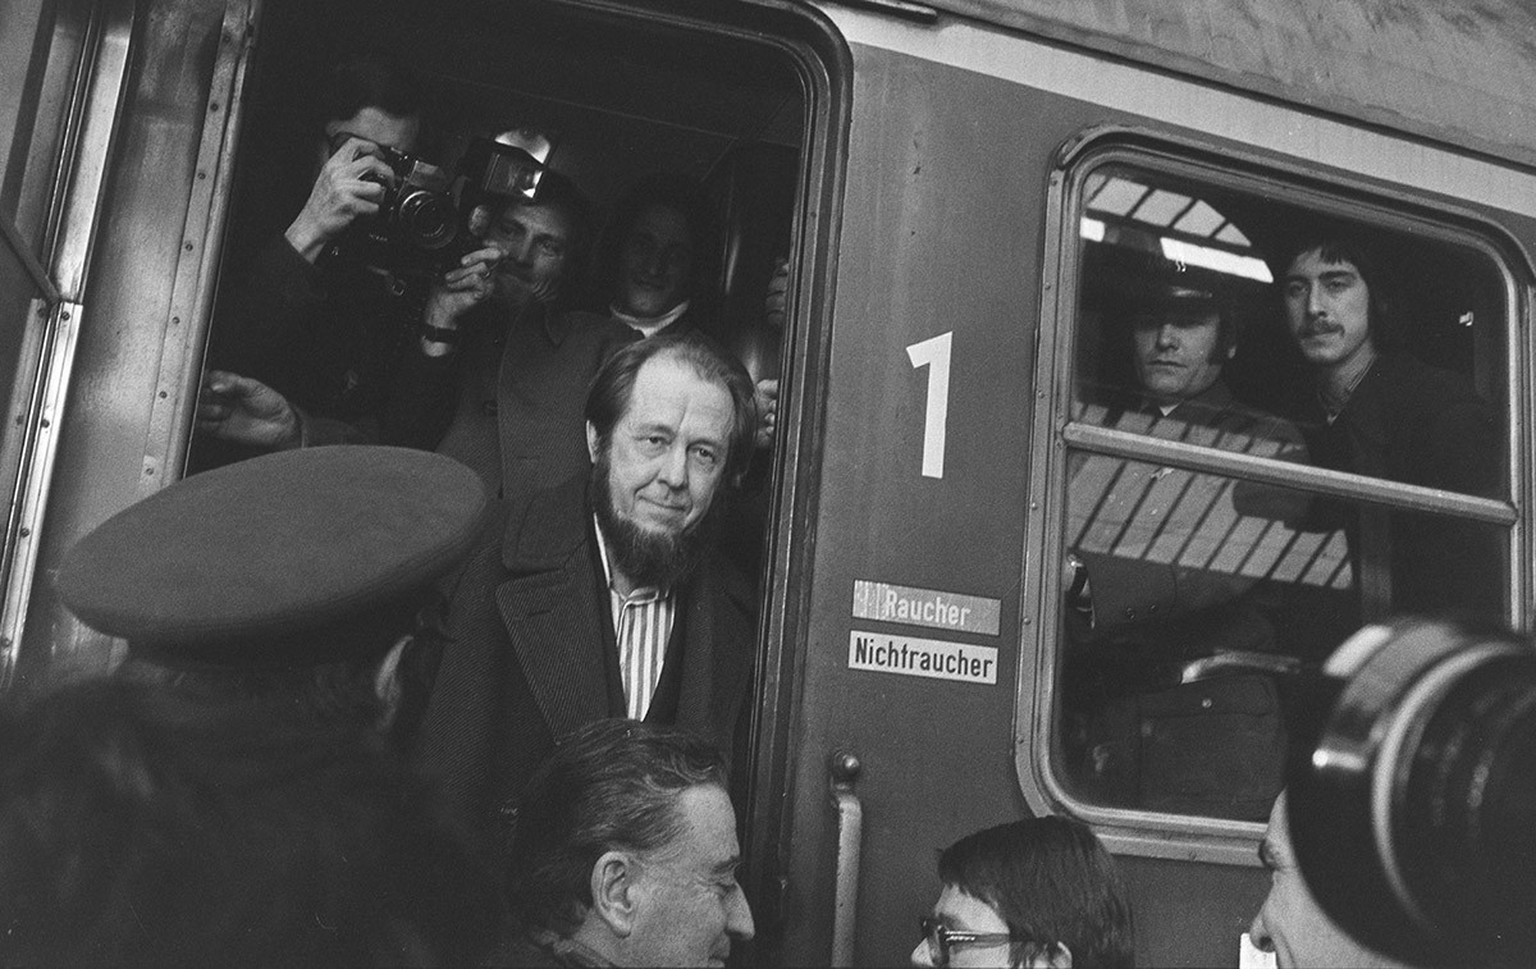 Ankunft von Alexander Solschenizyn 1974 in Zürich.
https://permalink.nationalmuseum.ch/100642817